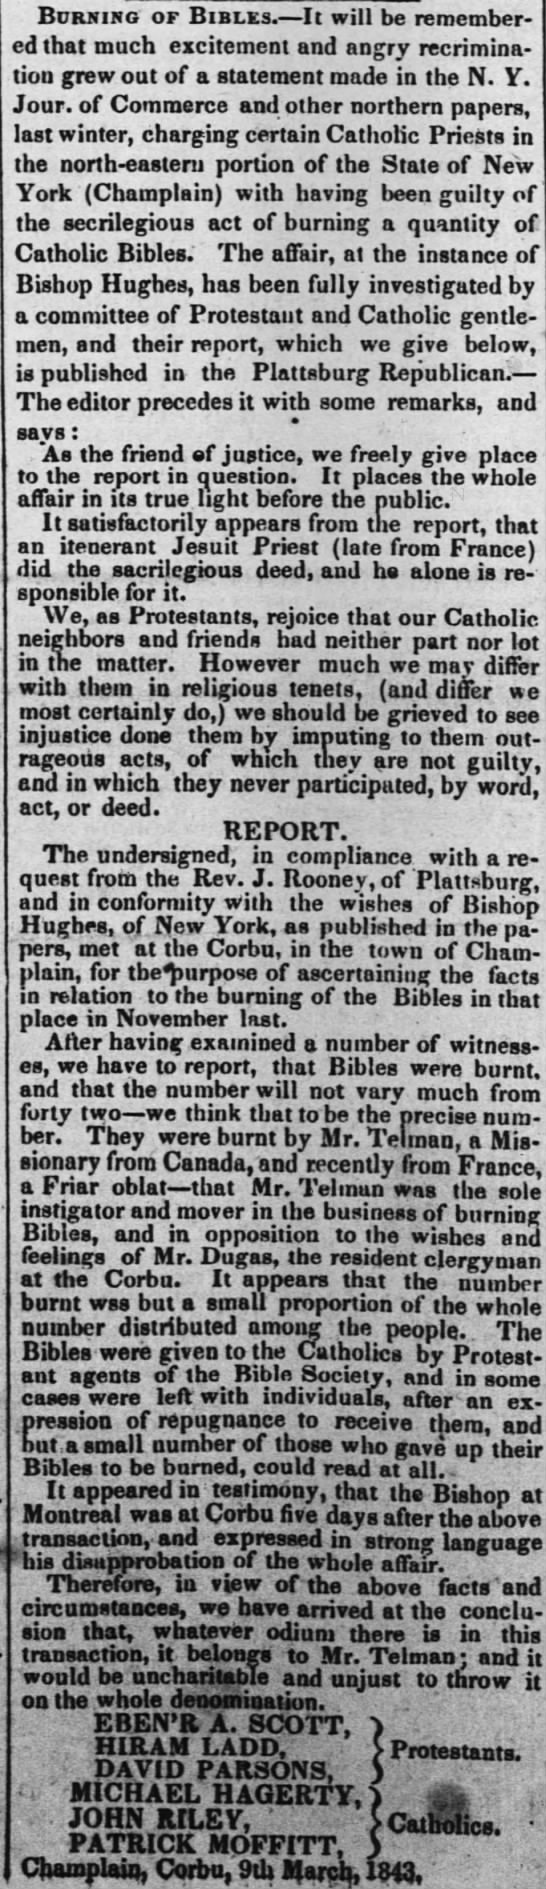 Bibles burnt in NY - 19 Jul 1843 - NOLA newspaper - 